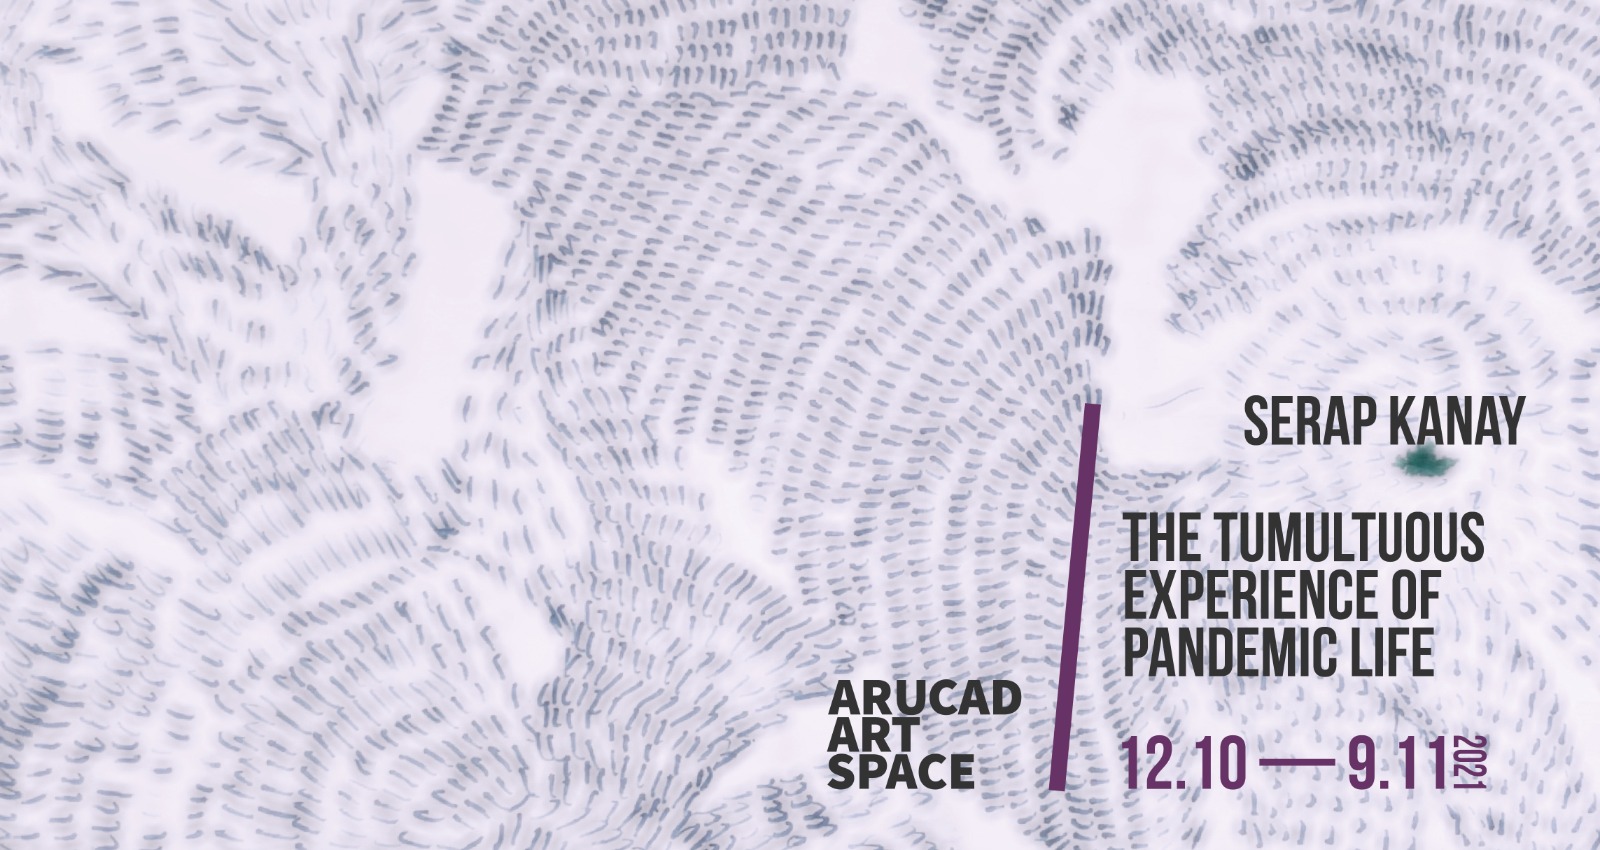 ARUCAD Art Space, Serap Kanay’ın ‘The Tumultuous Experience of Pandemic Life’ adlı yeni sergisine ev sahipliği yapıyor